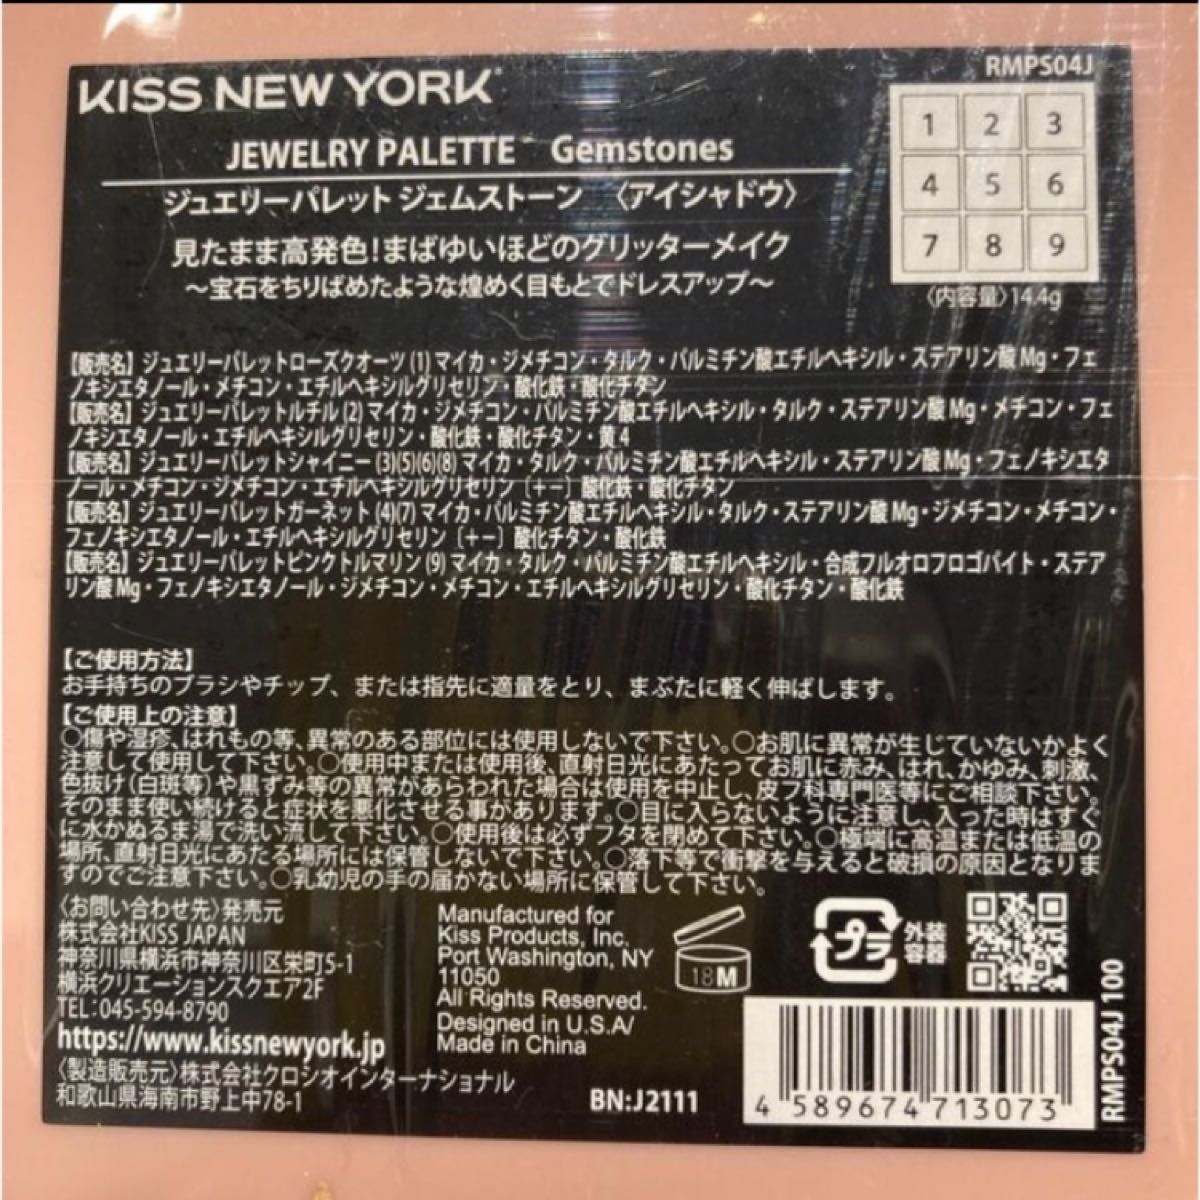 【新品未開封】キスニューヨーク KISS NEW YORK ジュエリーパレット ジェムストーン